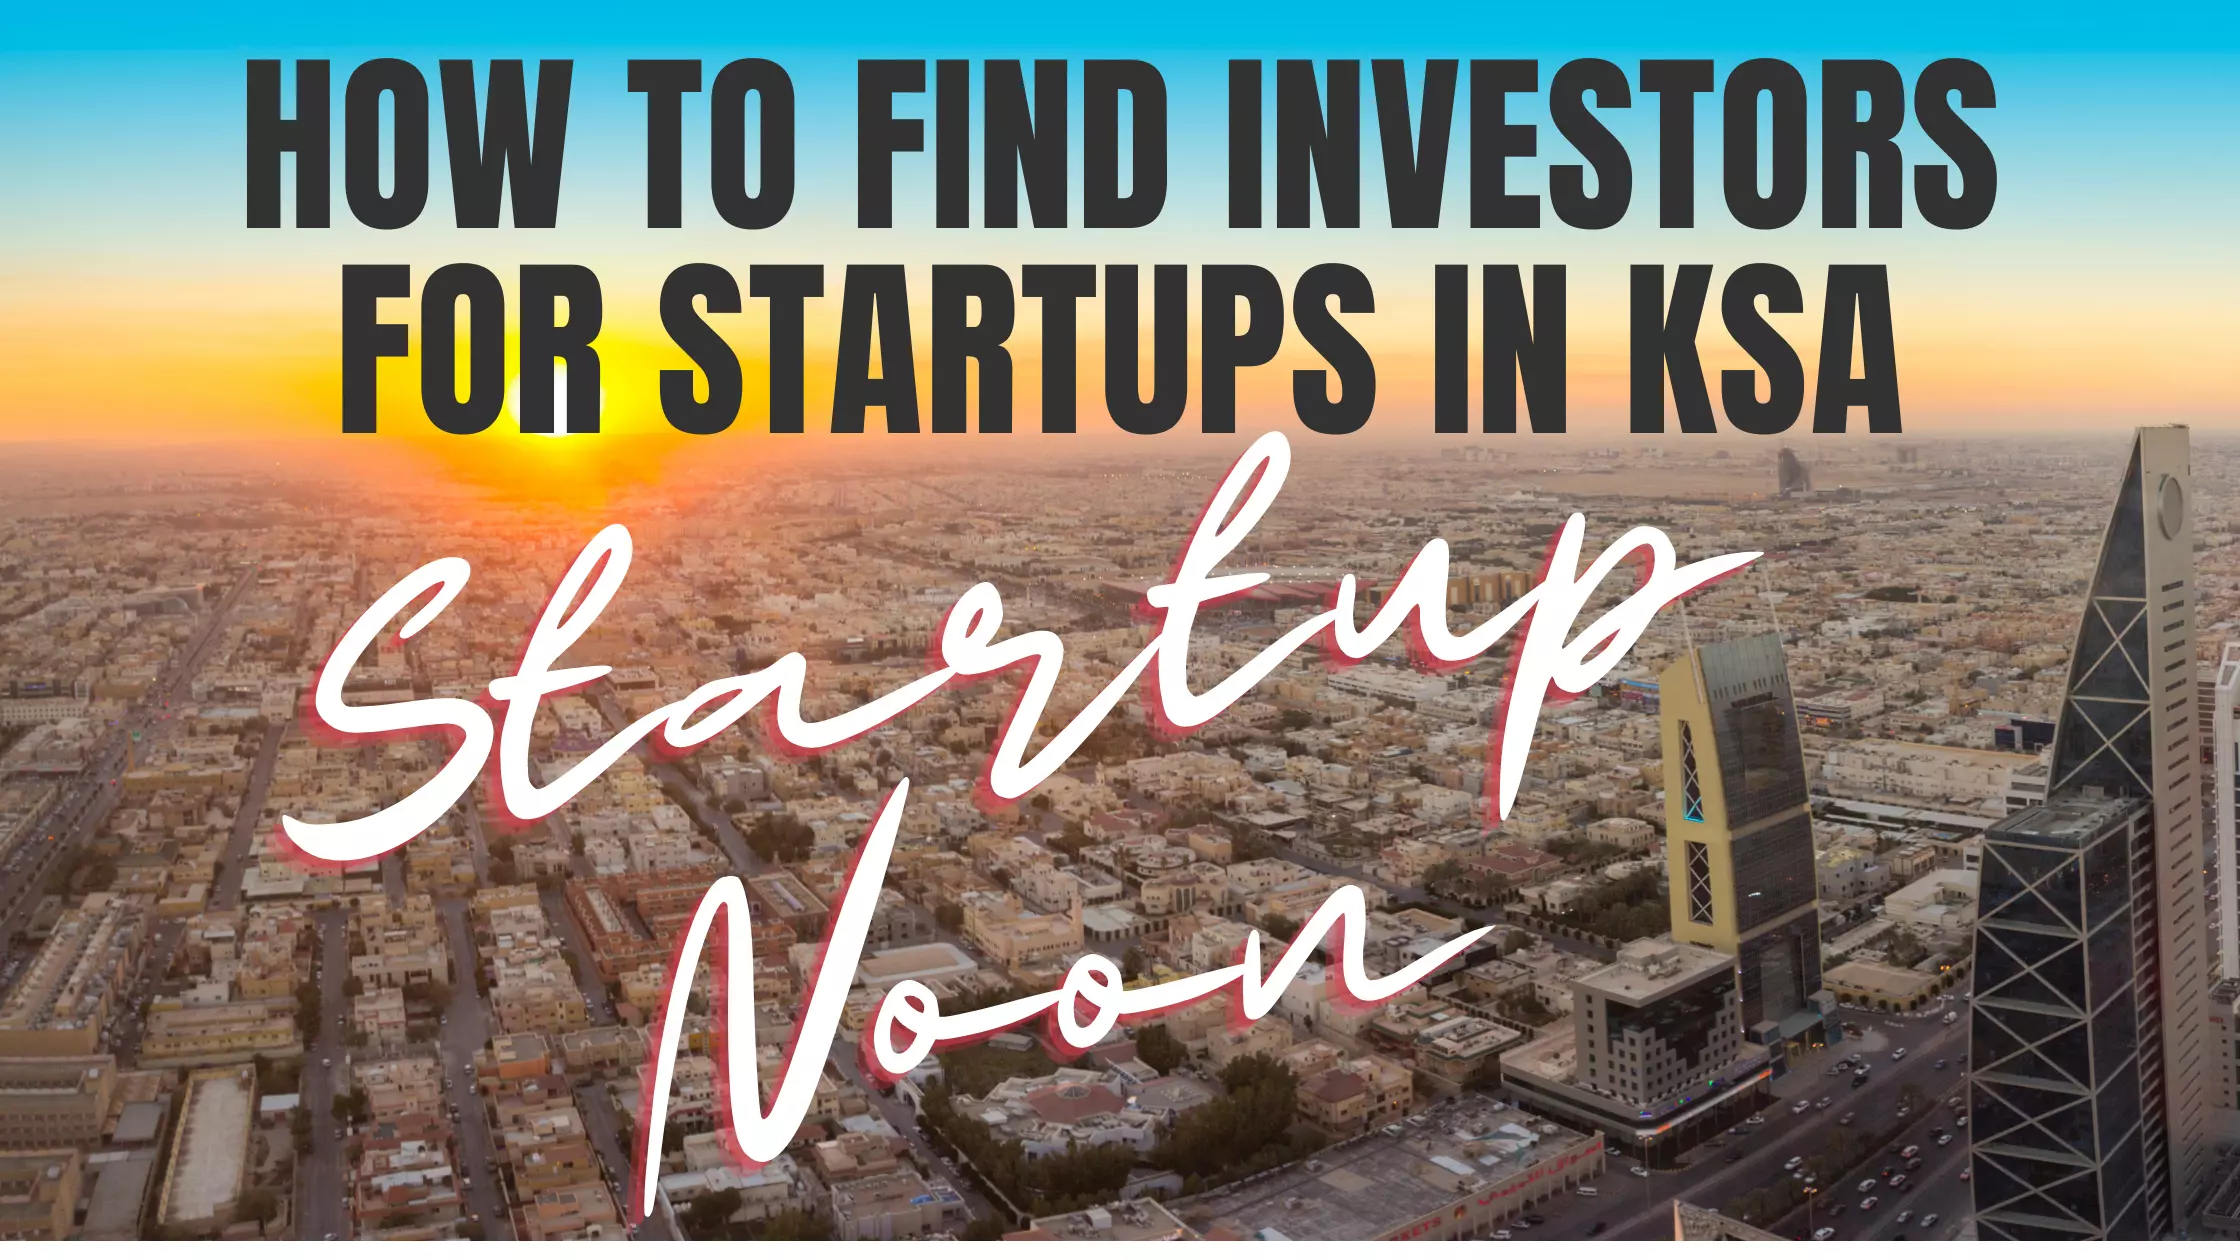 Investors for Startups in KSA